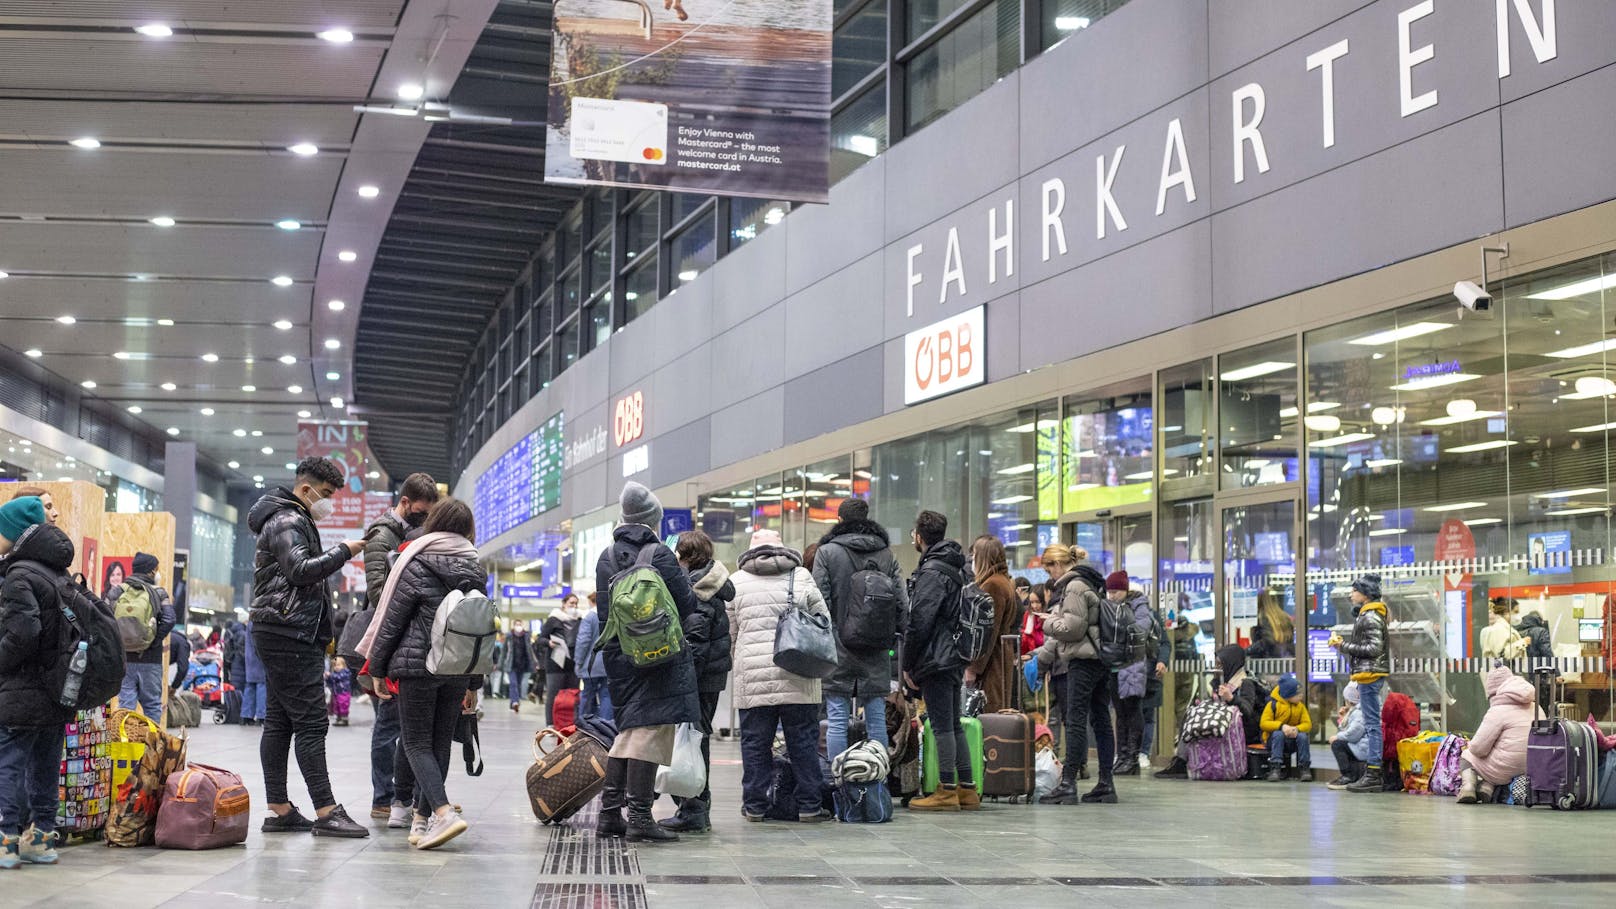 Ukrainische Flüchtlinge am Wiener Hauptbahnhof